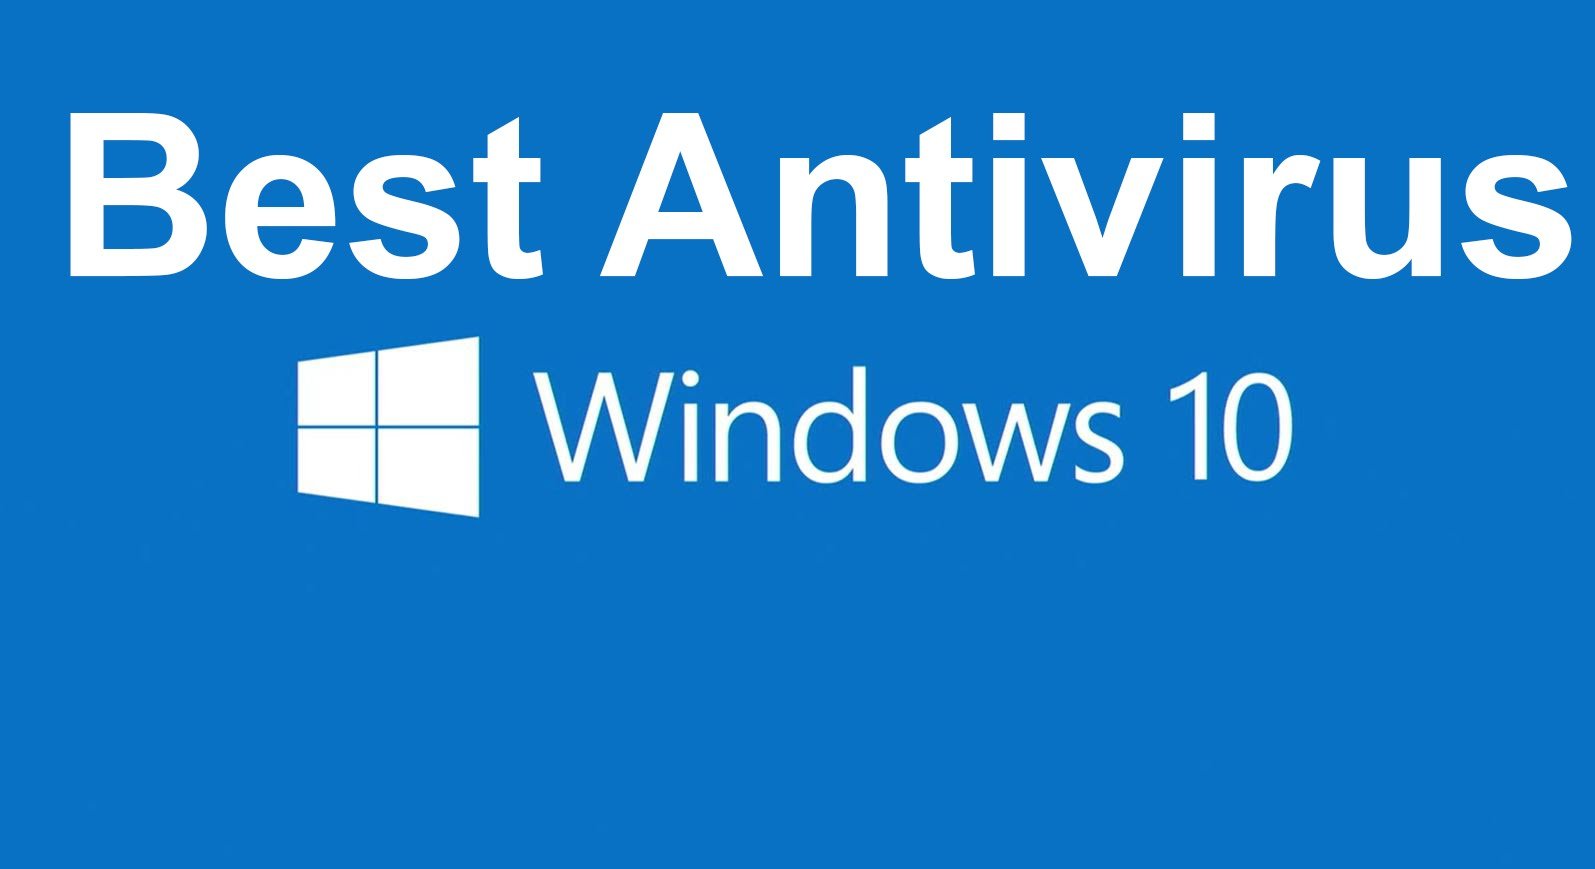 antivirus software free download for laptop windows 10